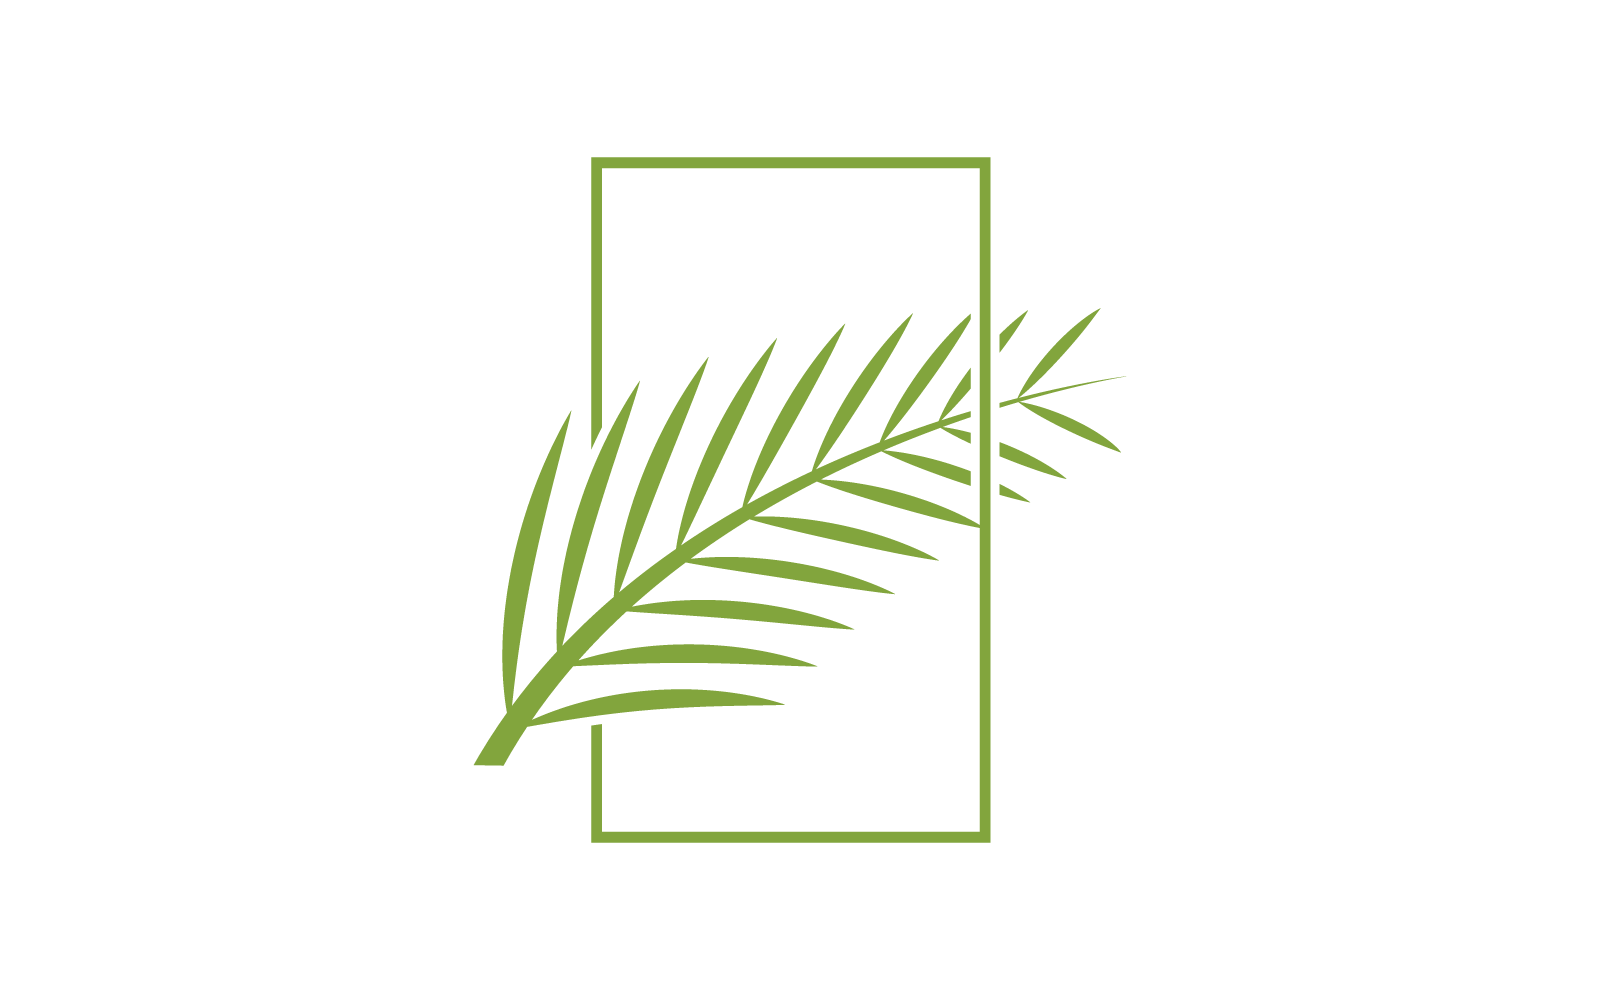 Palm tree leaf illustration logo vector design template